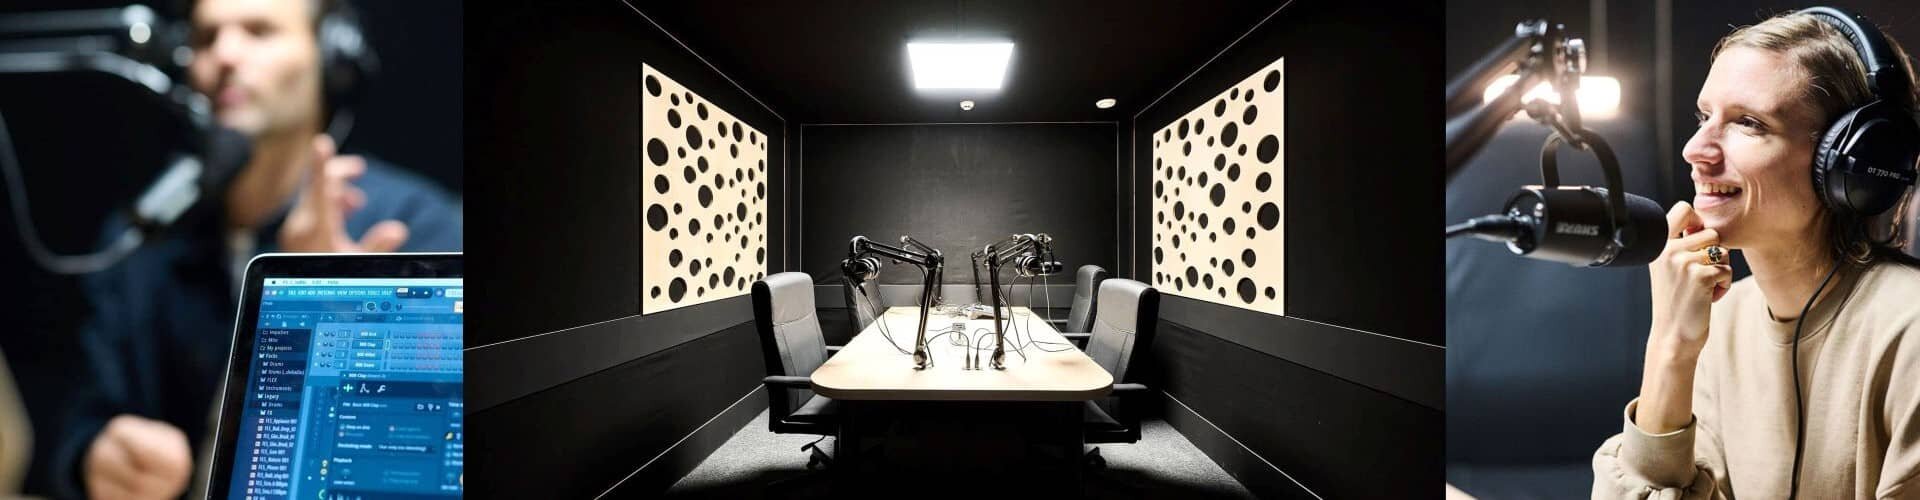 deux podcasteurs créant un podcast dazns un studio de podcast professionnel | © Plug The Jack